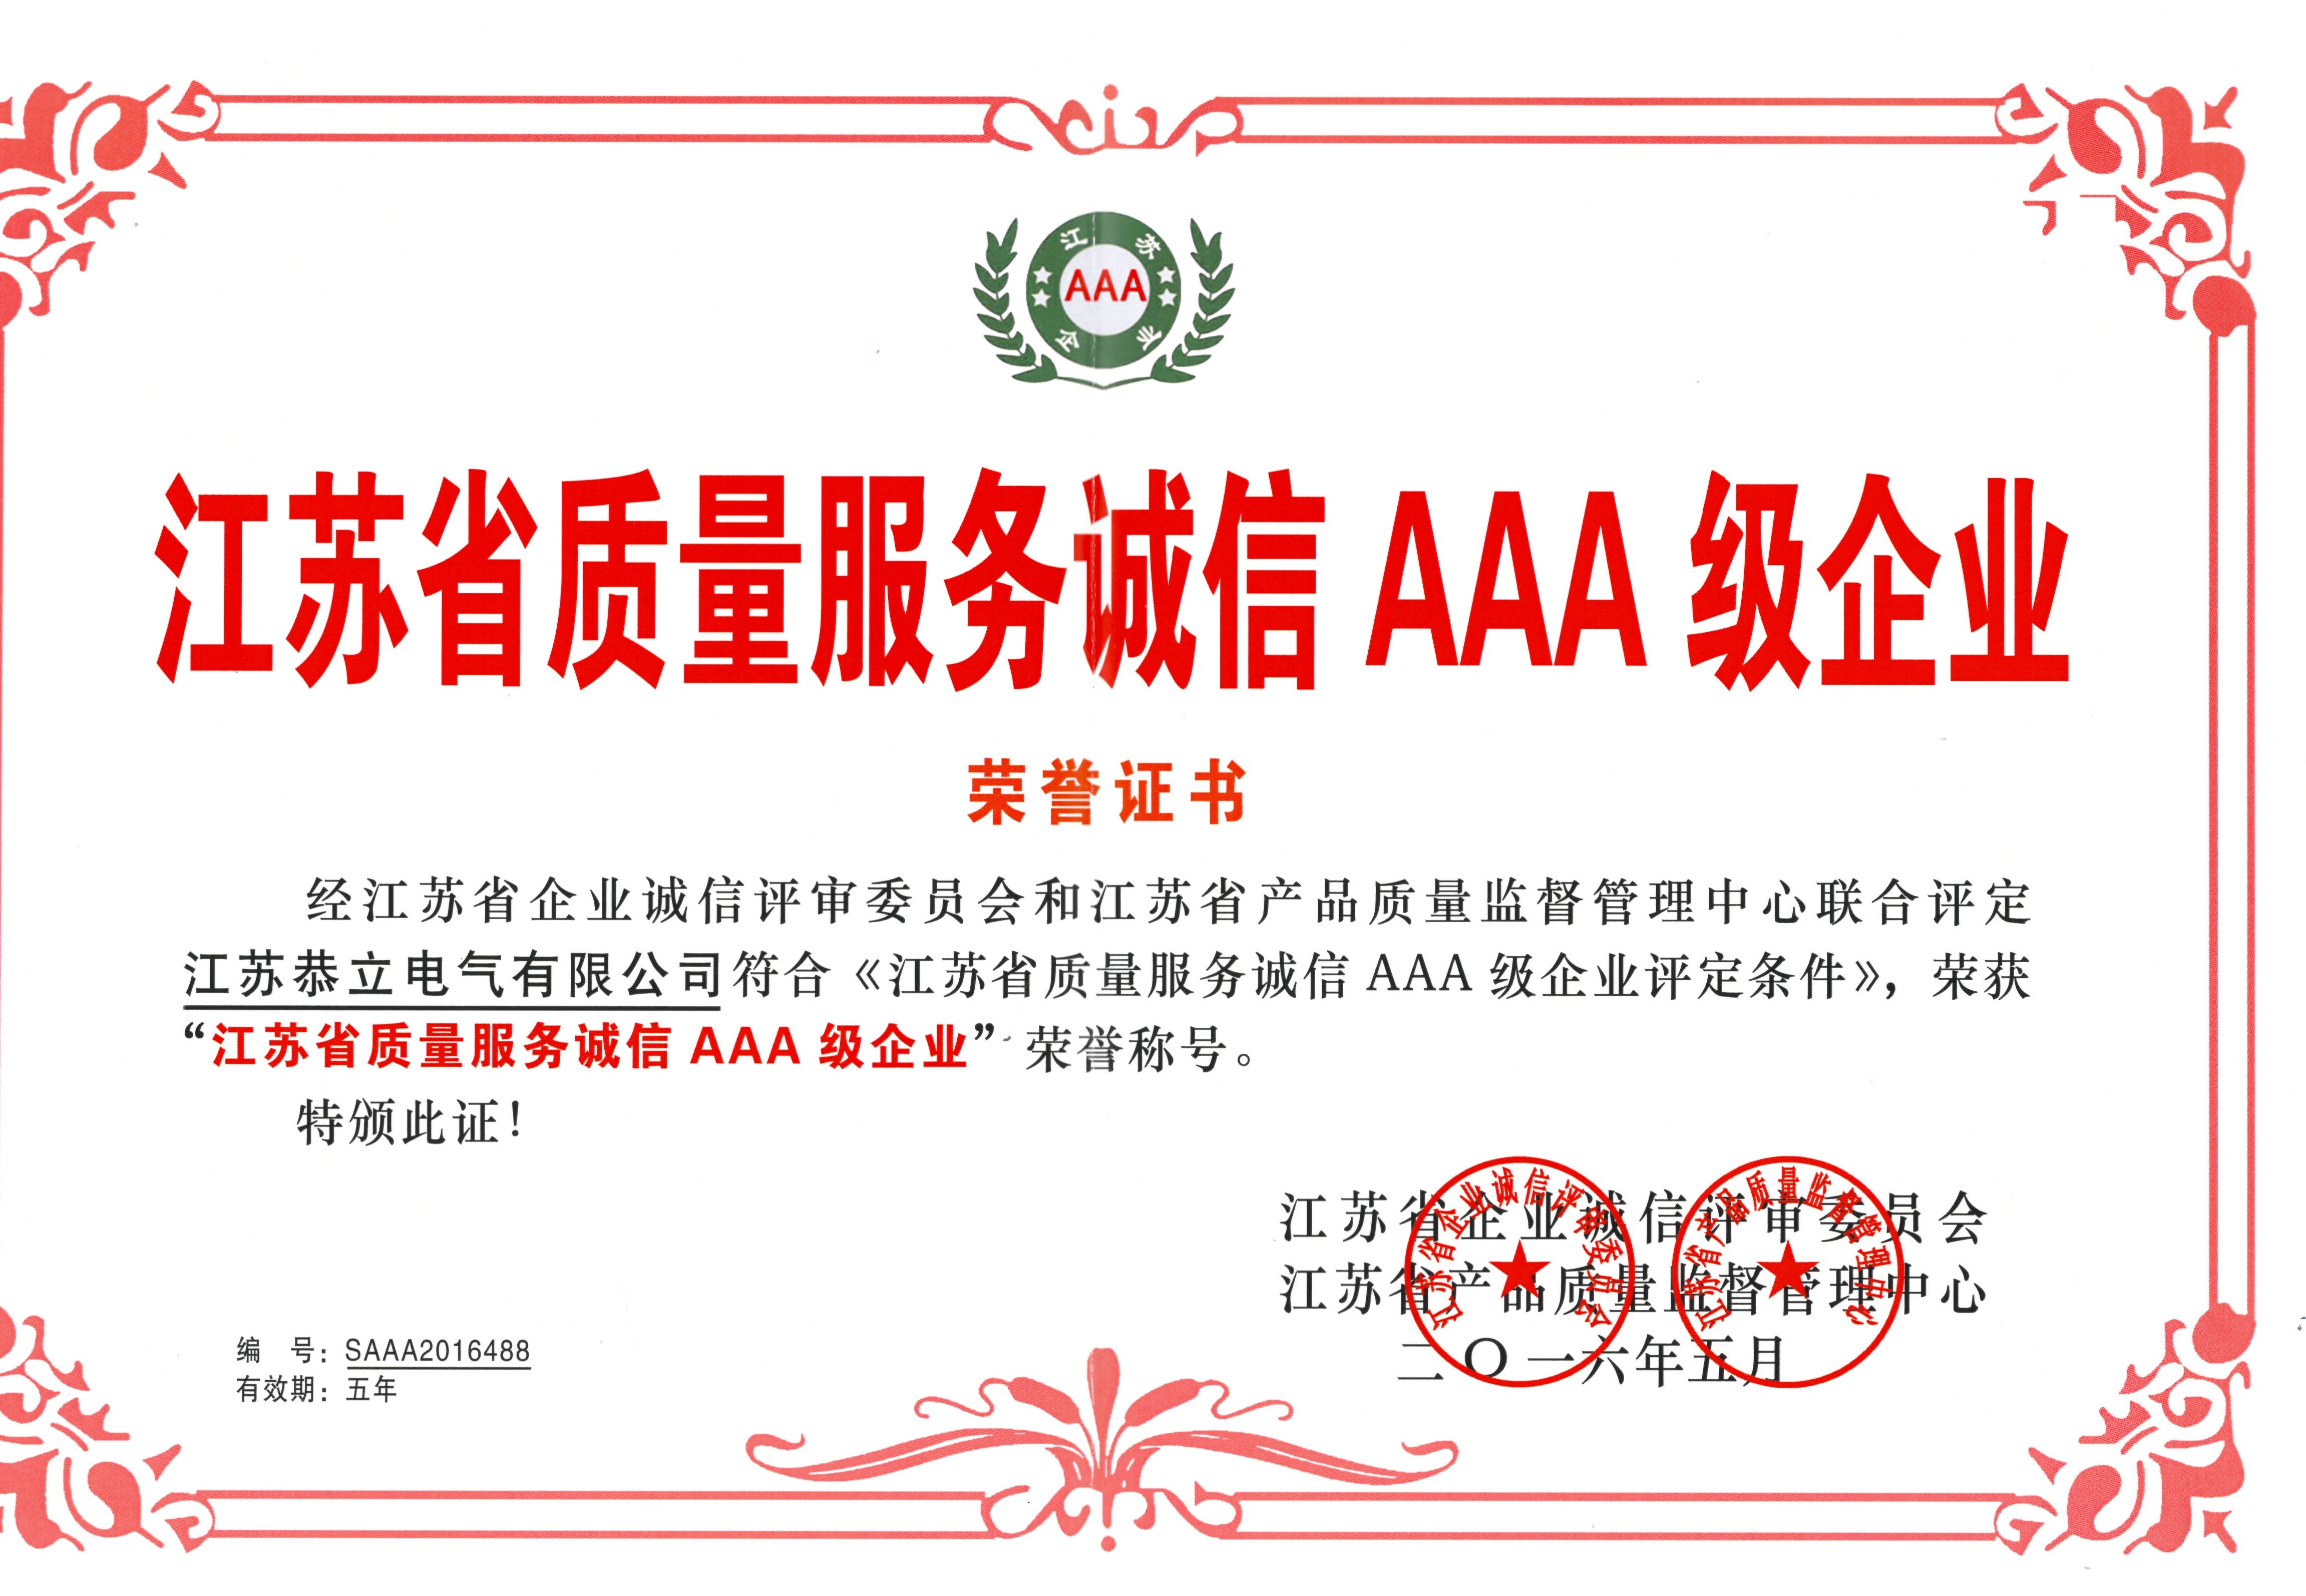 江蘇省質量服務誠信AAA級企業榮譽證書